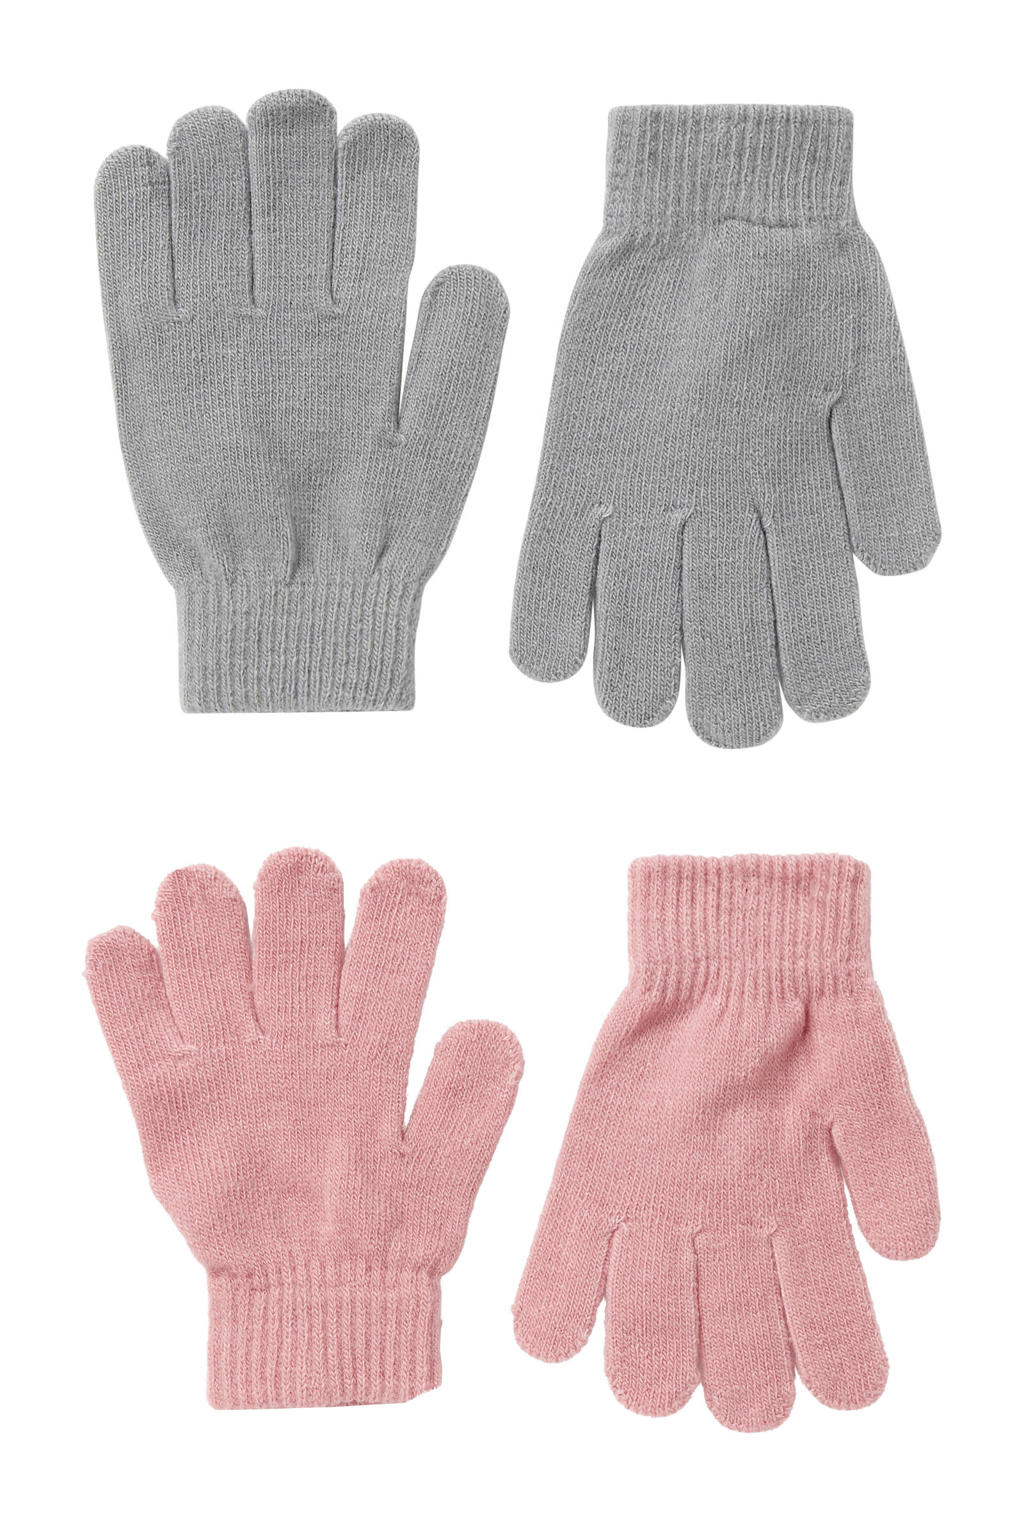 Sarlini handschoenen - set van 2 grijs/roze